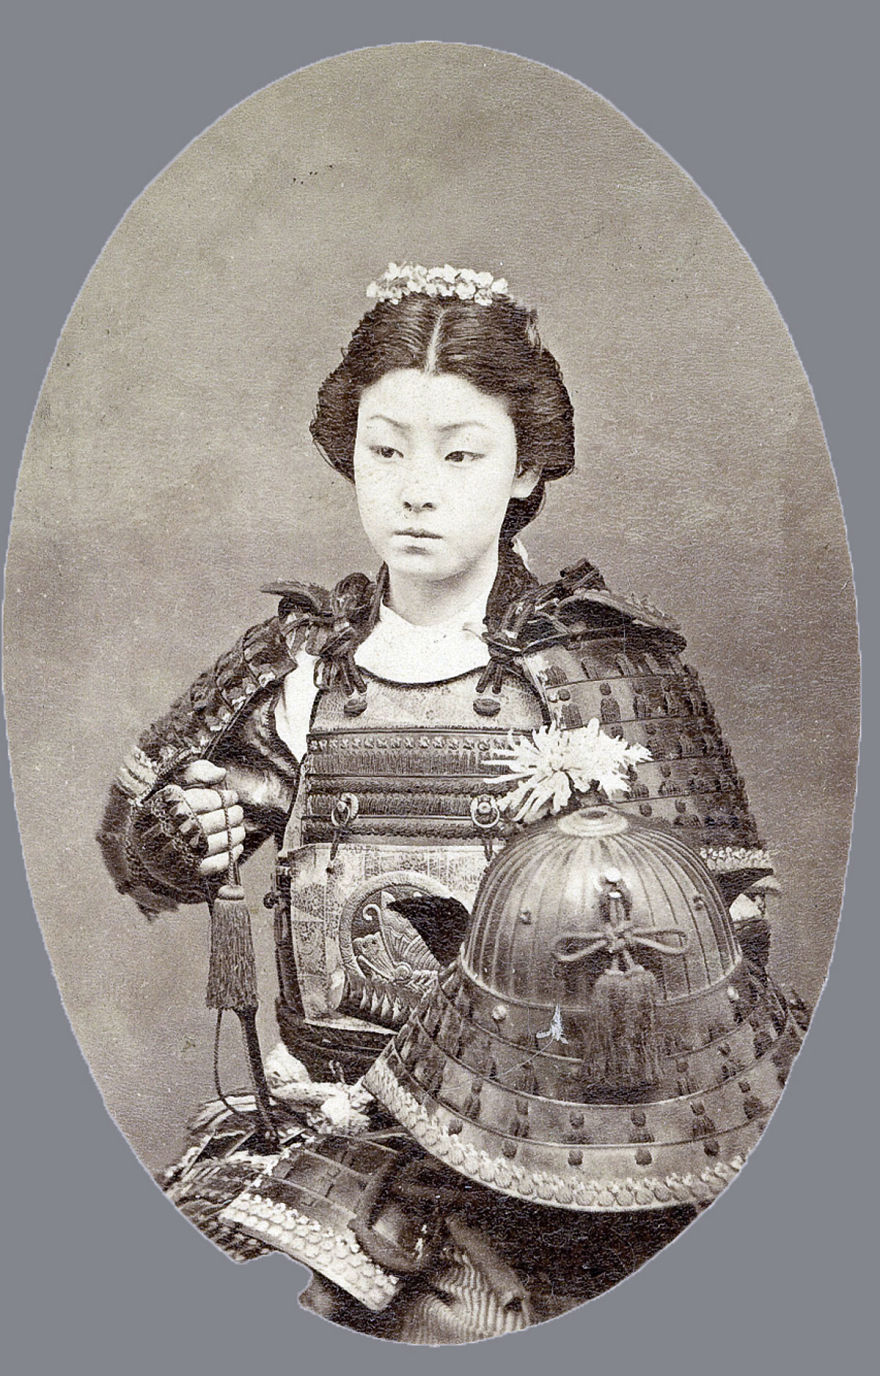 15 рідкісних і незабутніх фото останніх самураїв 1800-х років